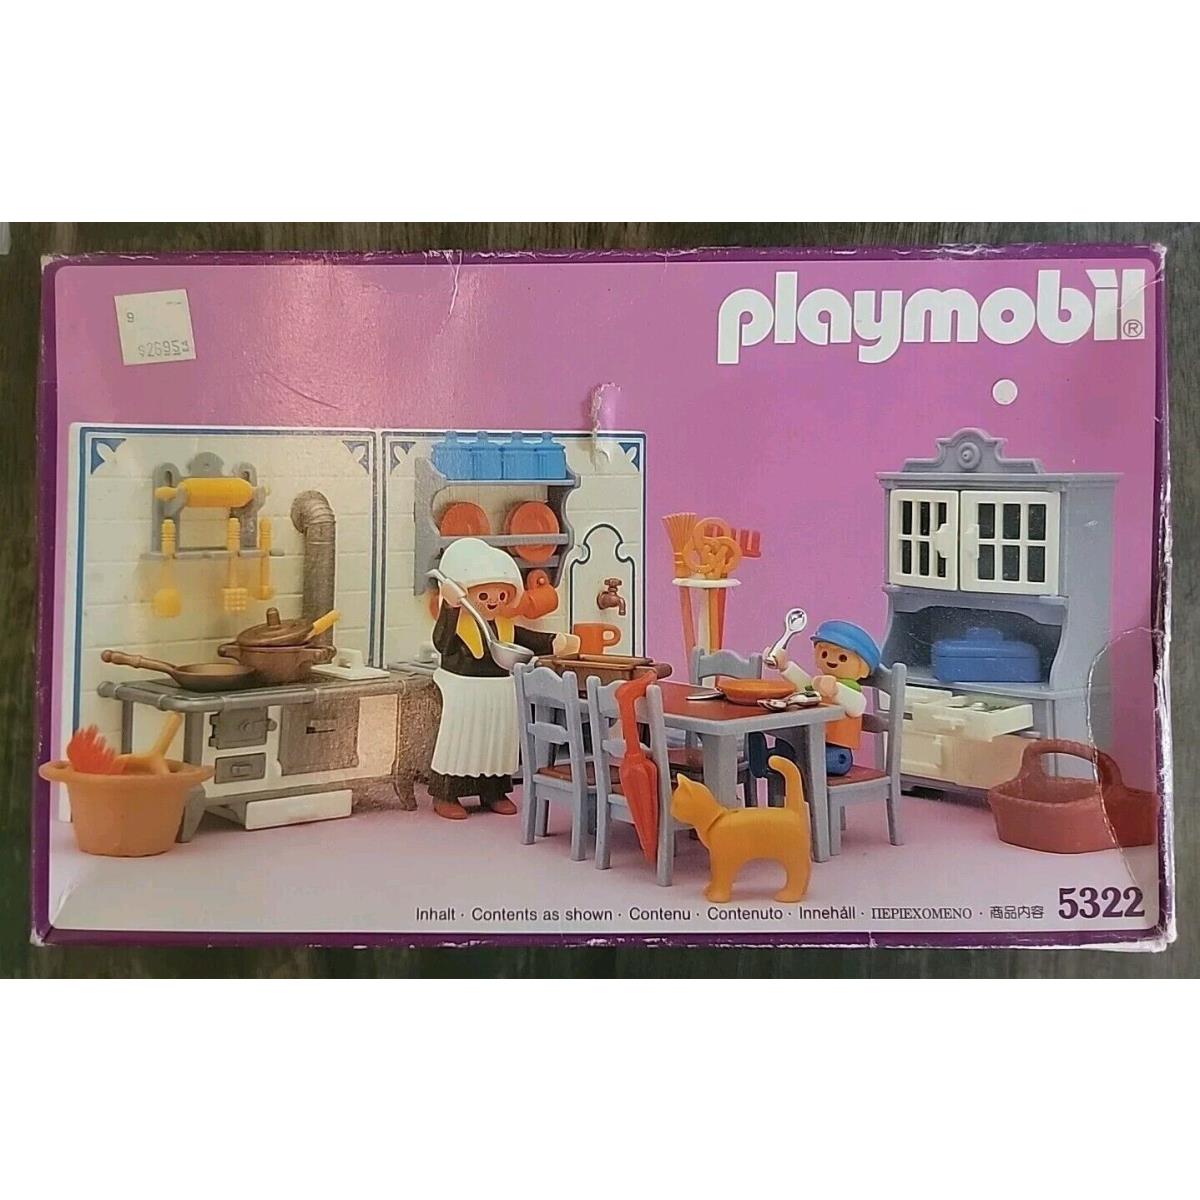 Playmobil 5322 Victorian Mansion Kitchen - 1989 Maid Child